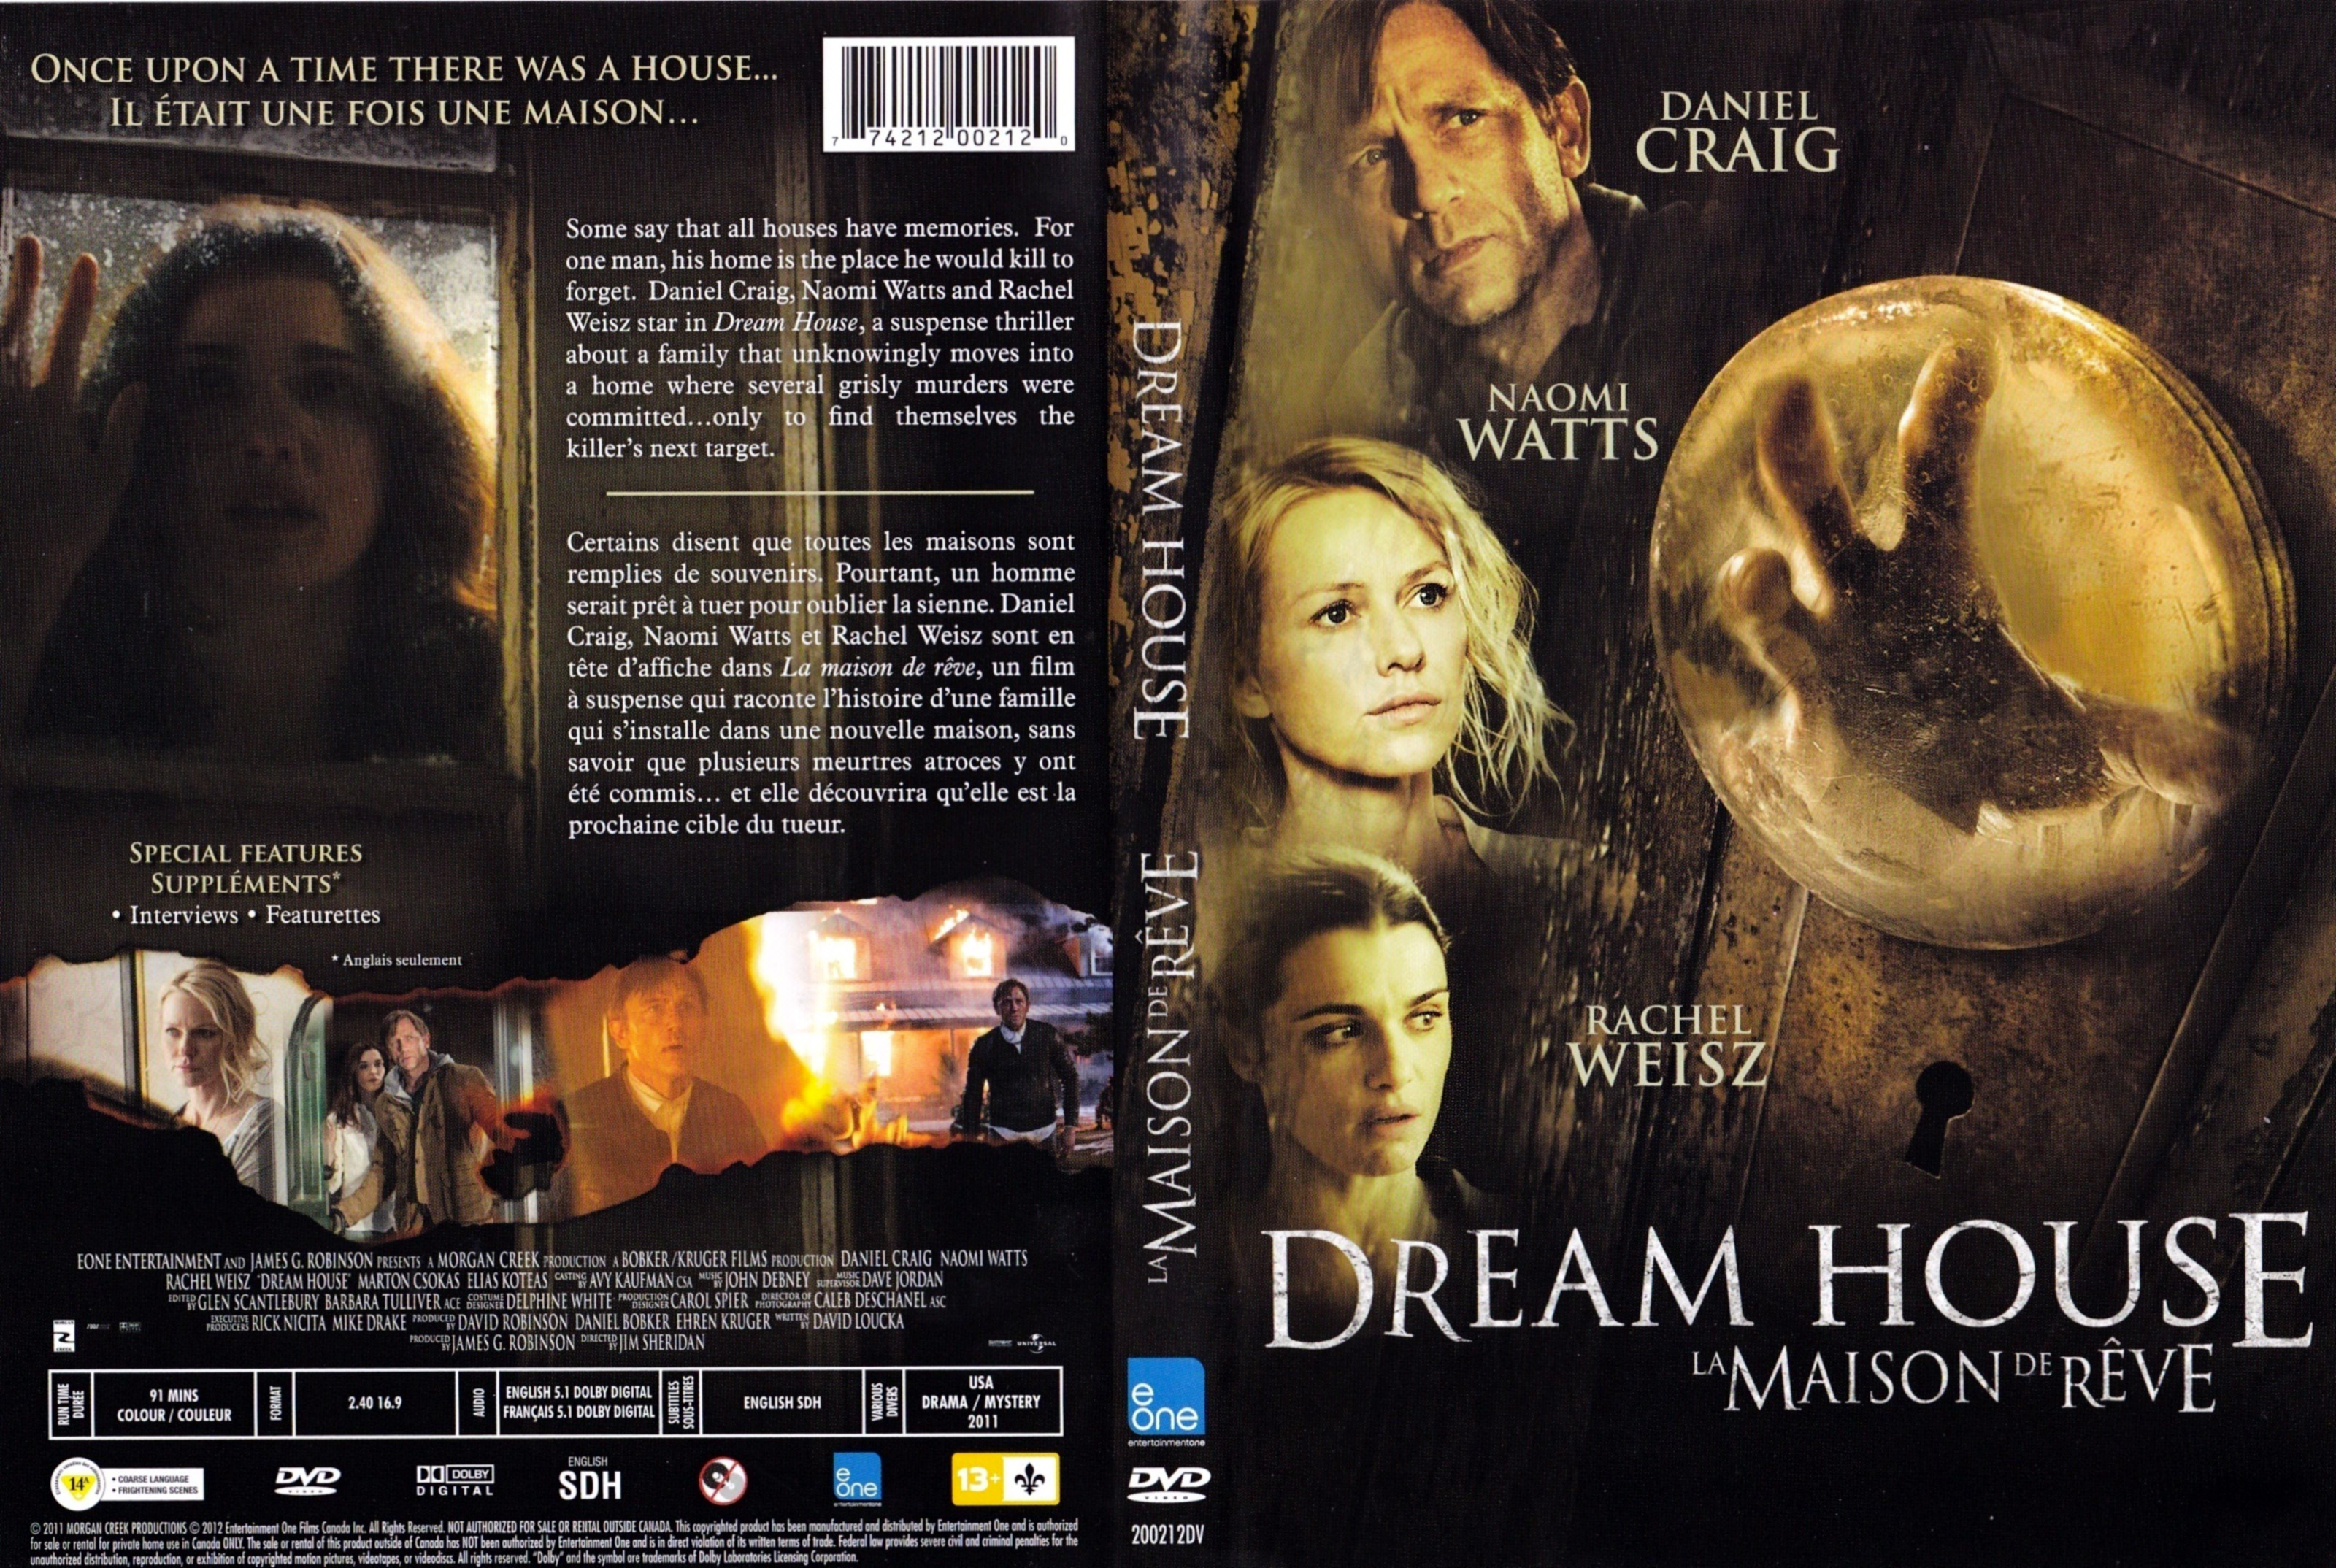 Jaquette DVD La maison de rve - Dream house (Canadienne)